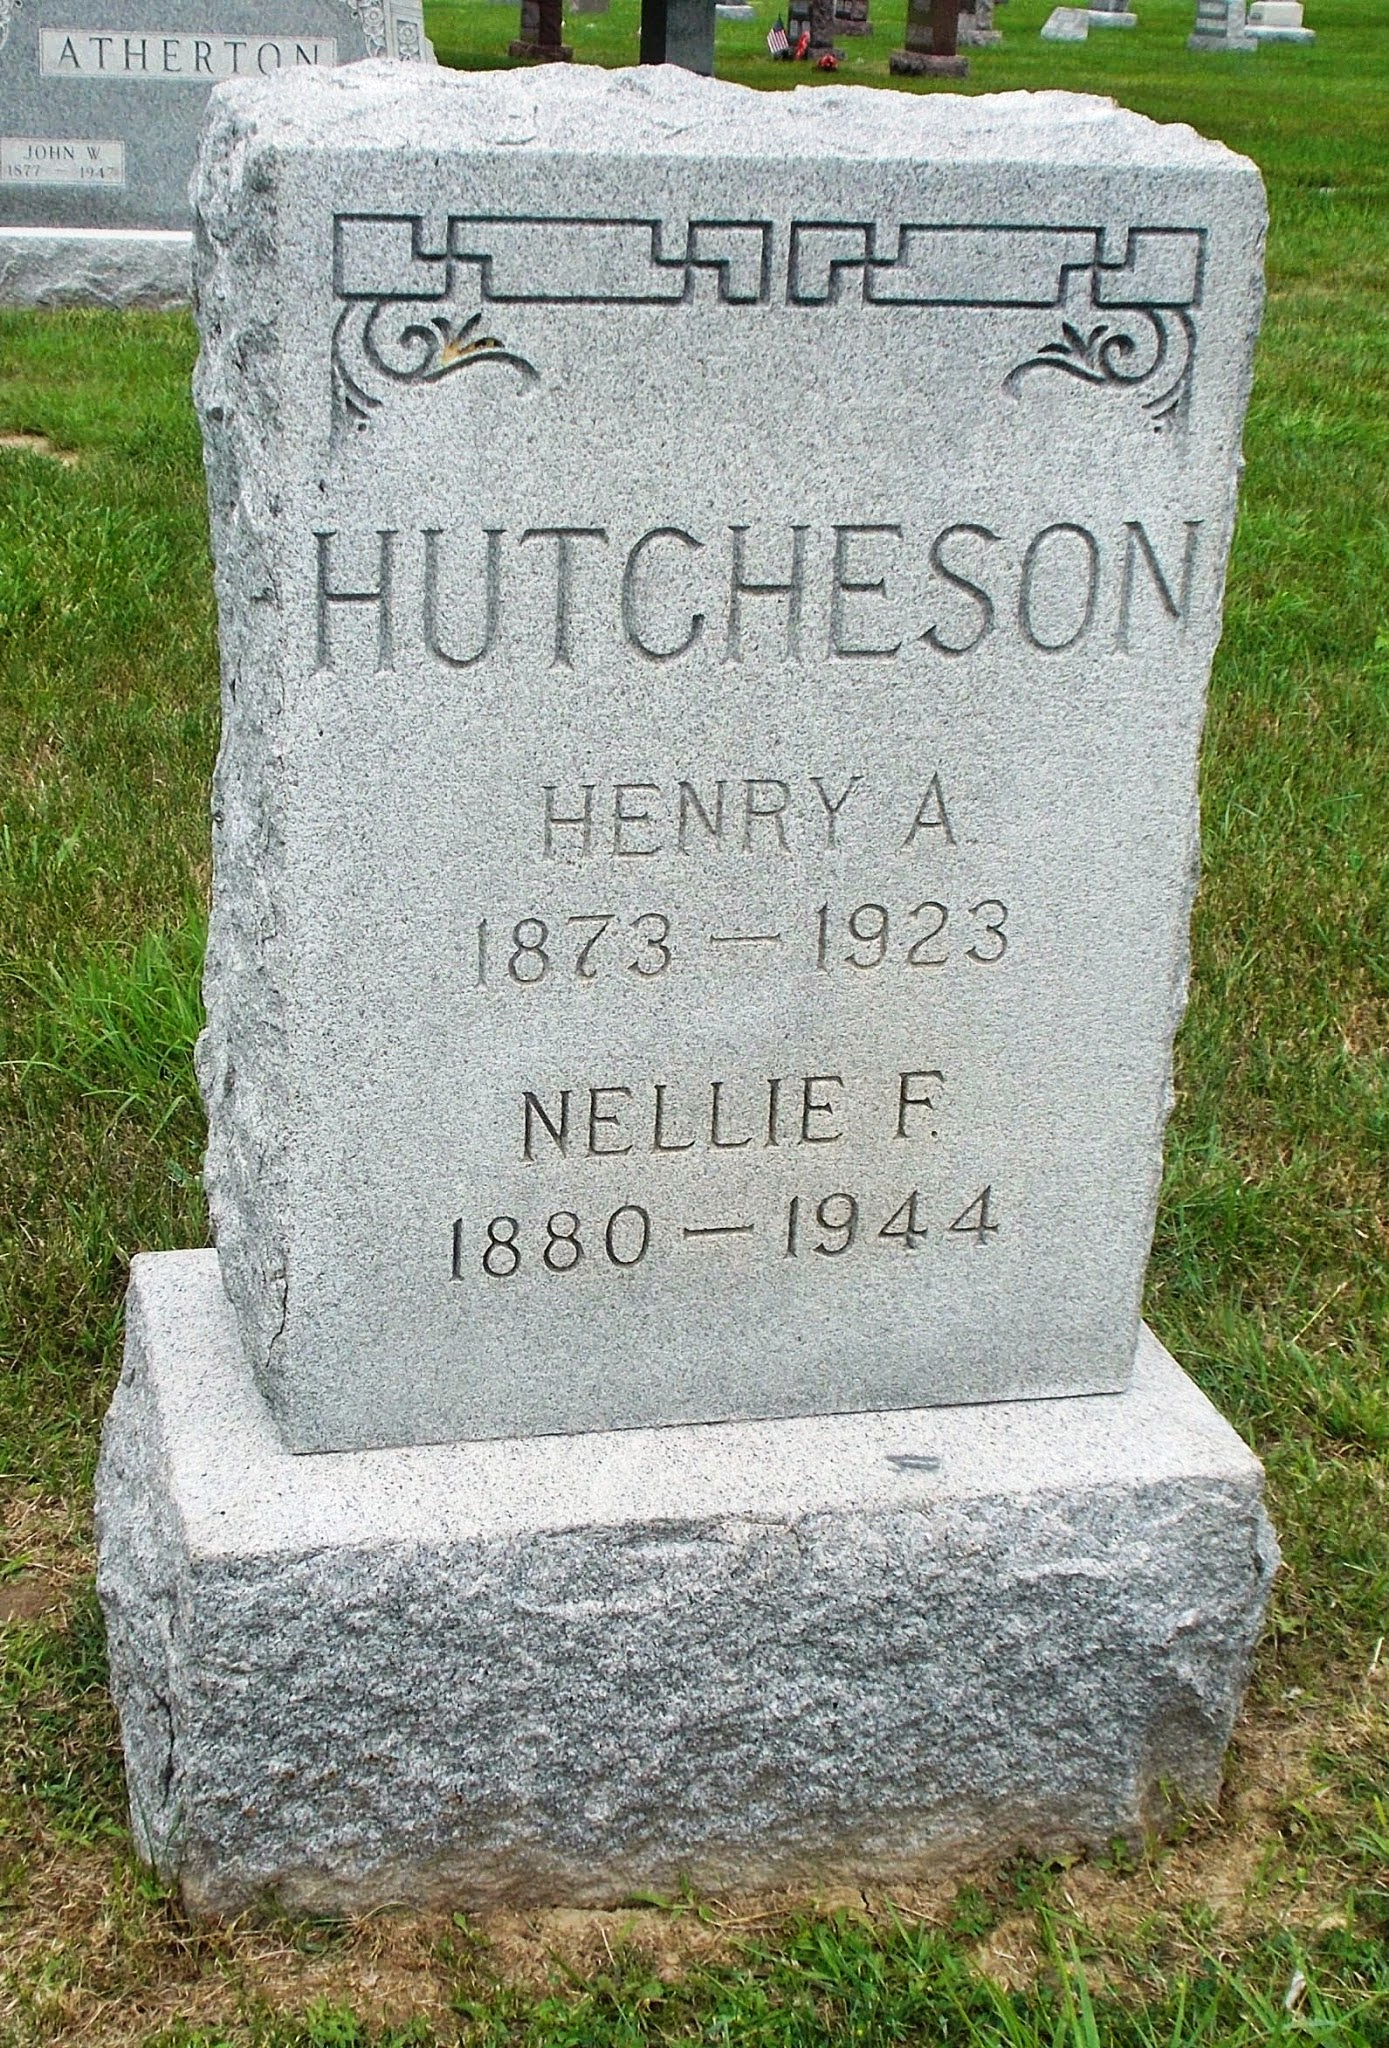 Nellie F Hutcheson